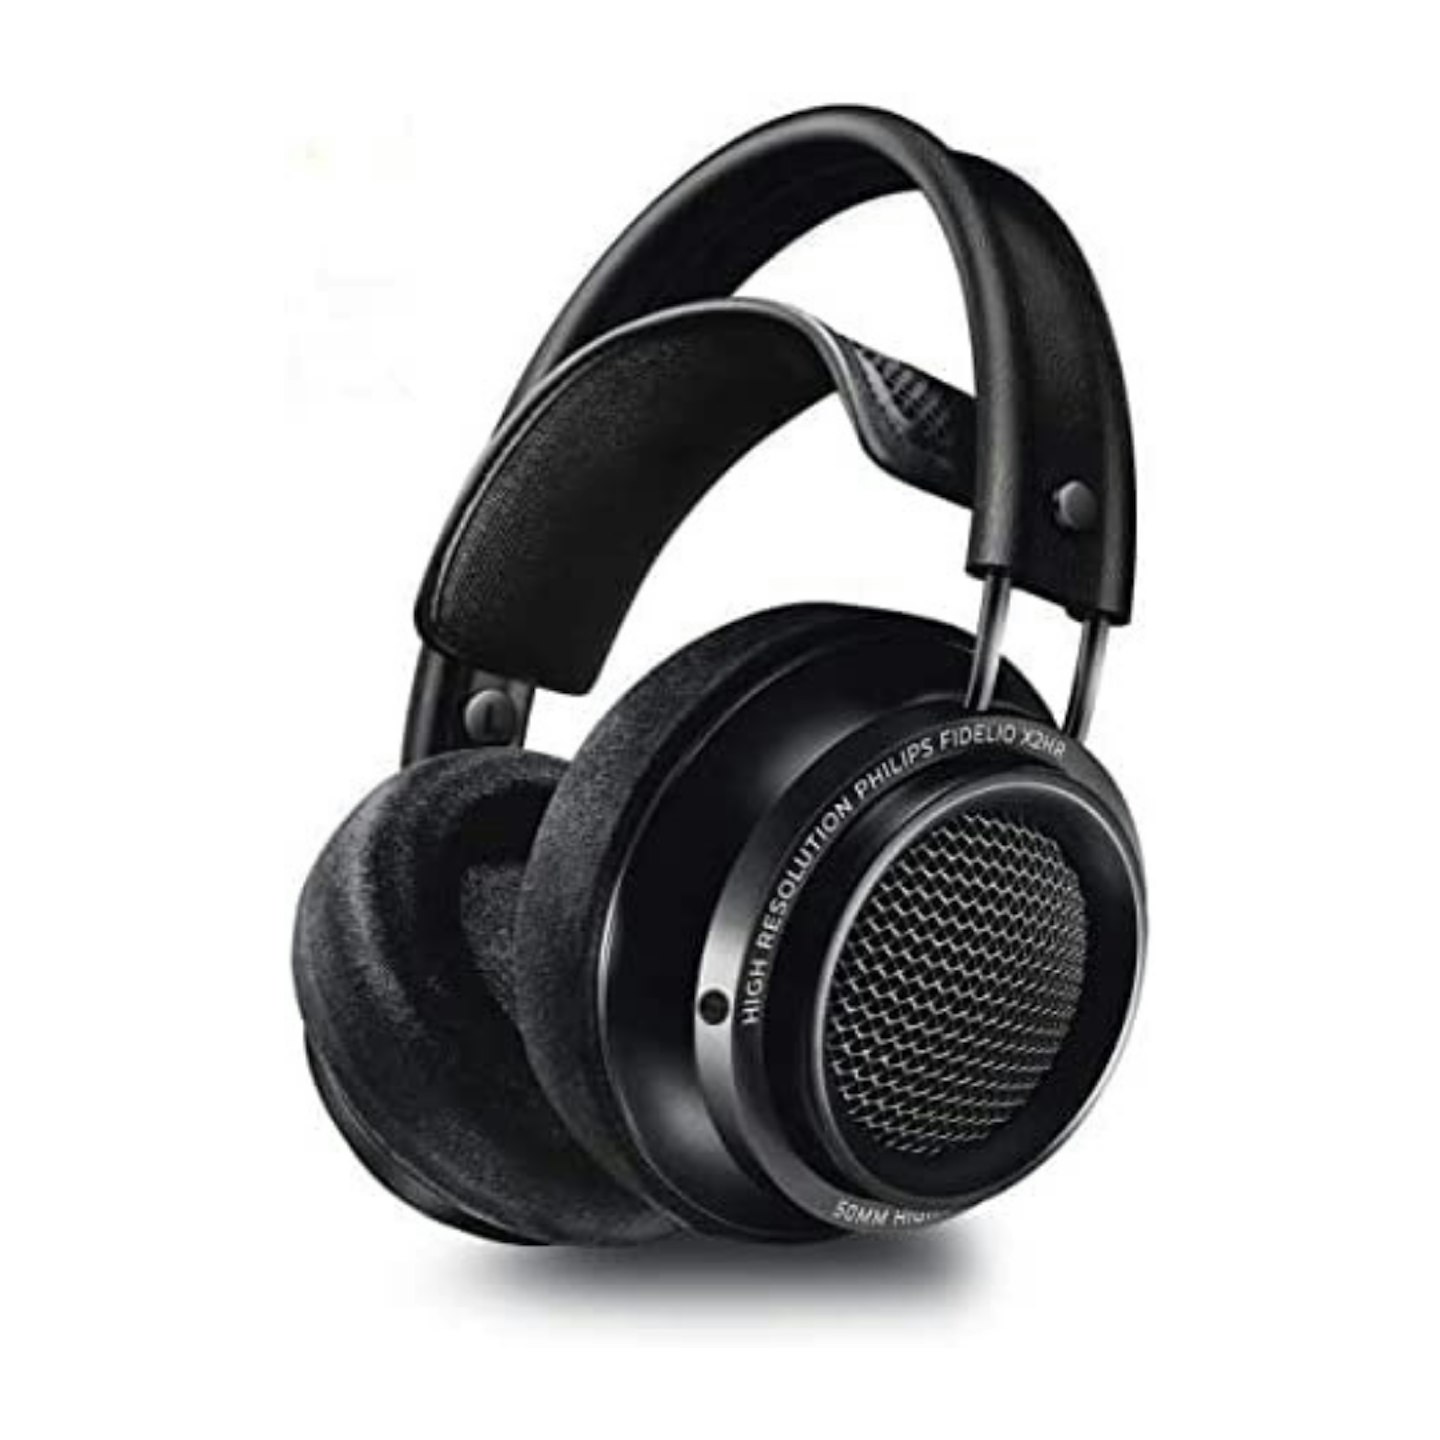 Philips Fidelio X2HR studio headphones